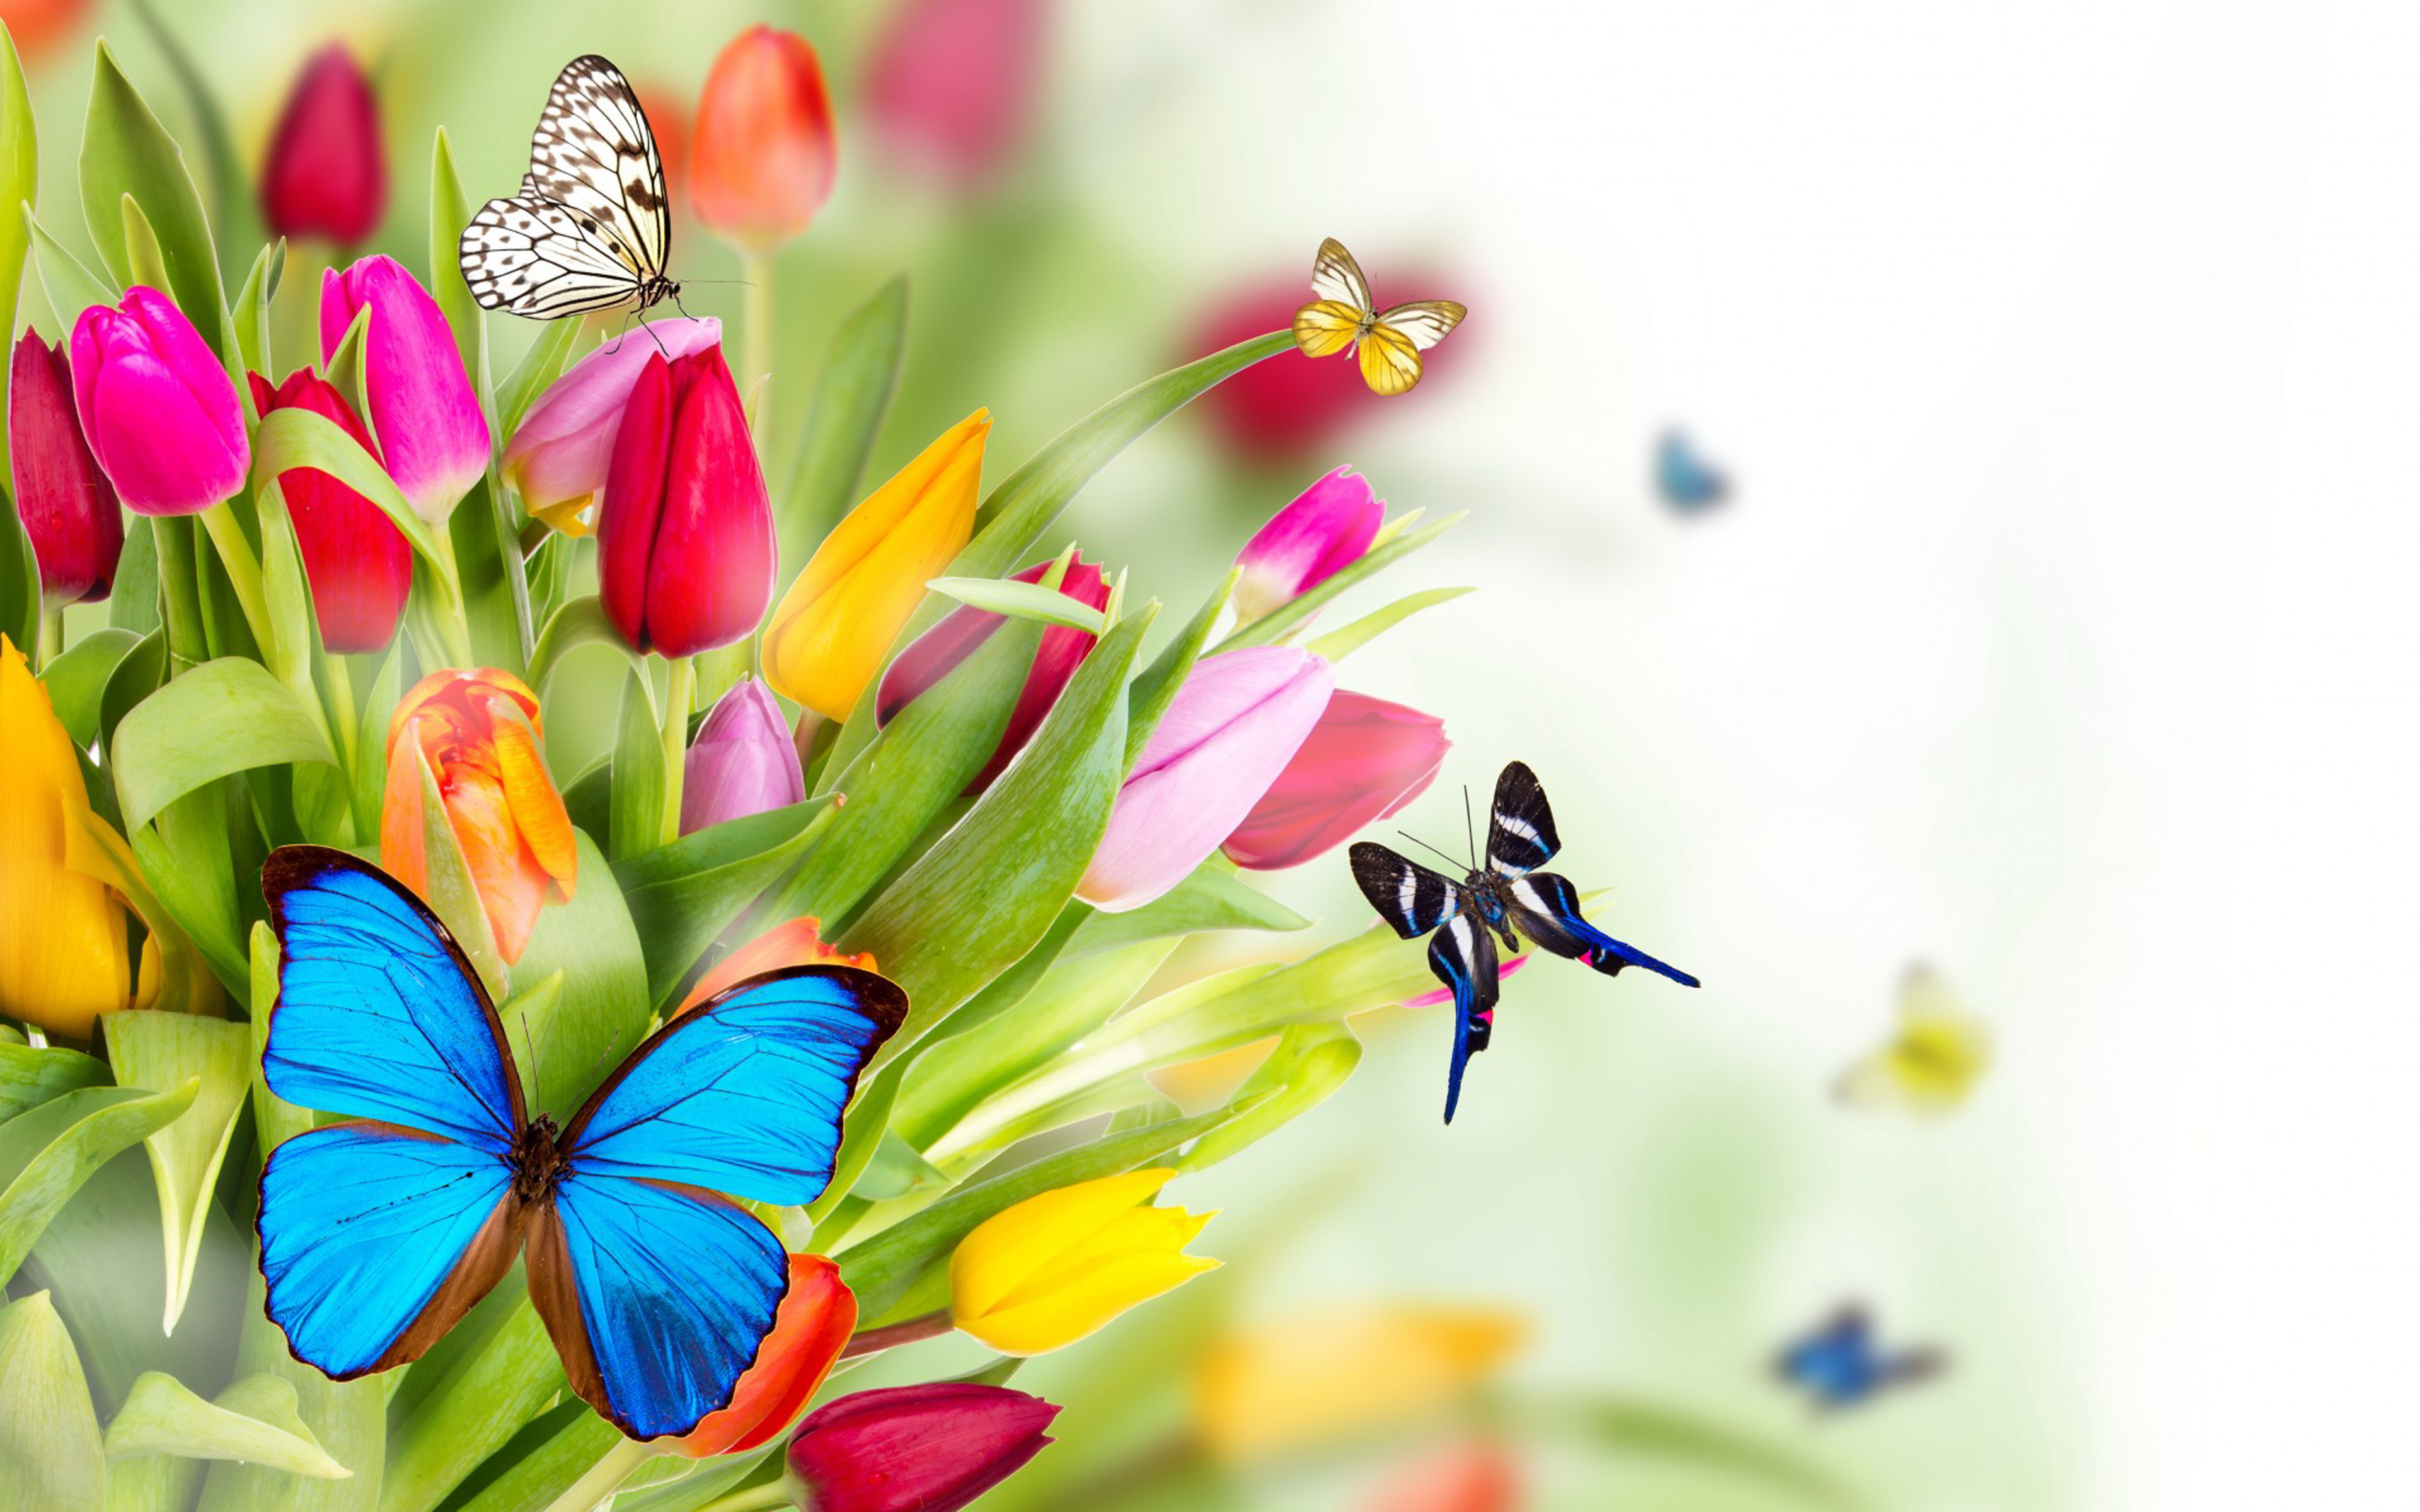 Spring Flowers Tulips Butterfly Windows Themes Best Hd Desktop 